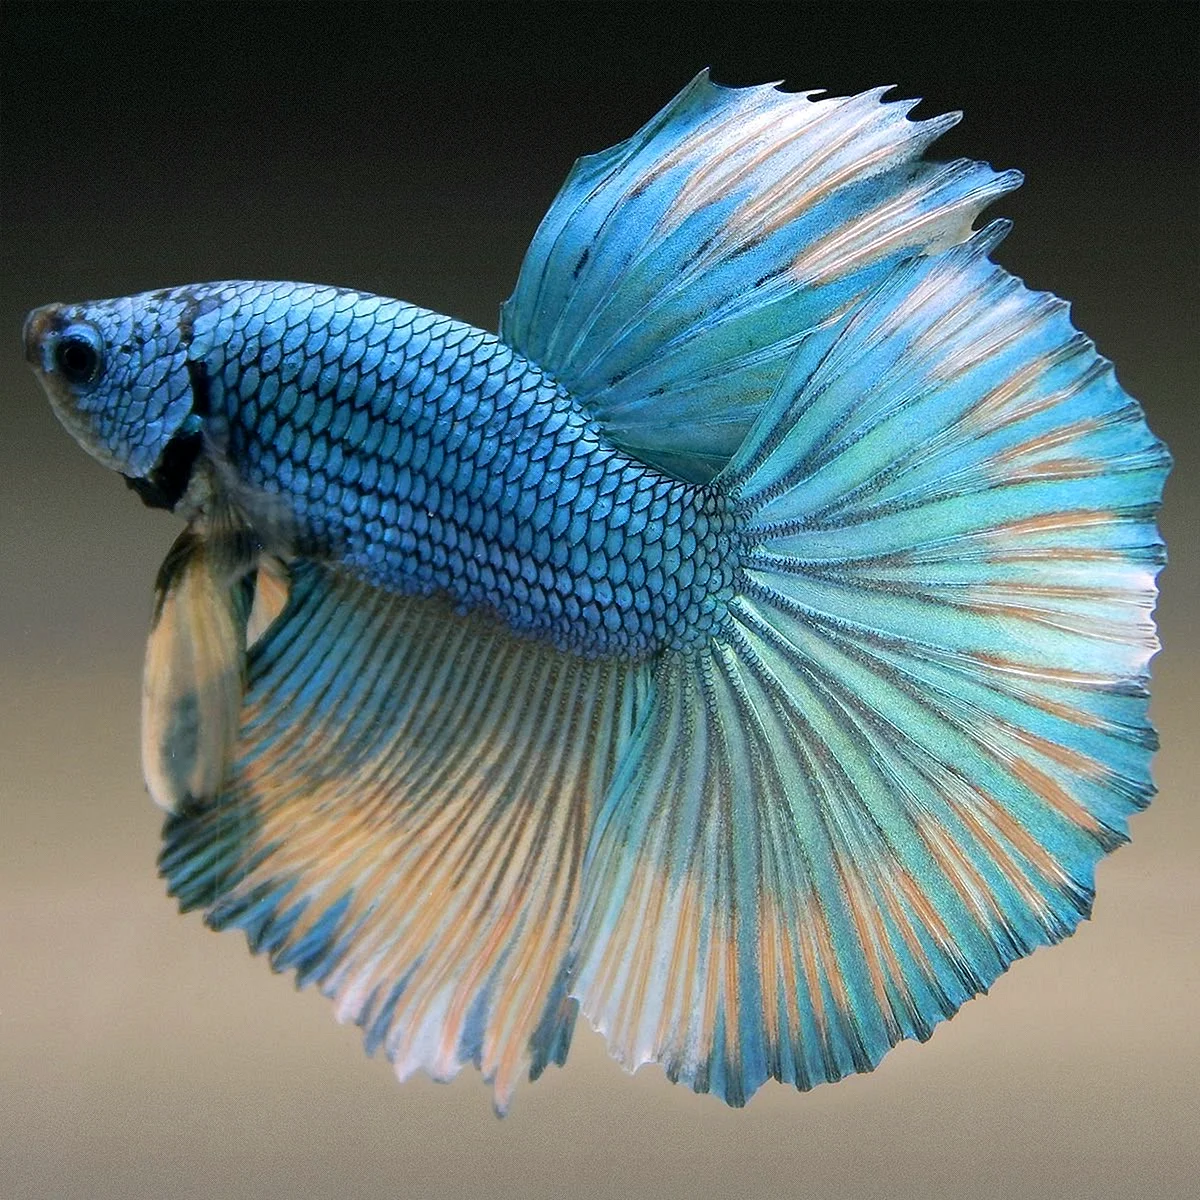 Аквариумная рыбка голубой петушок